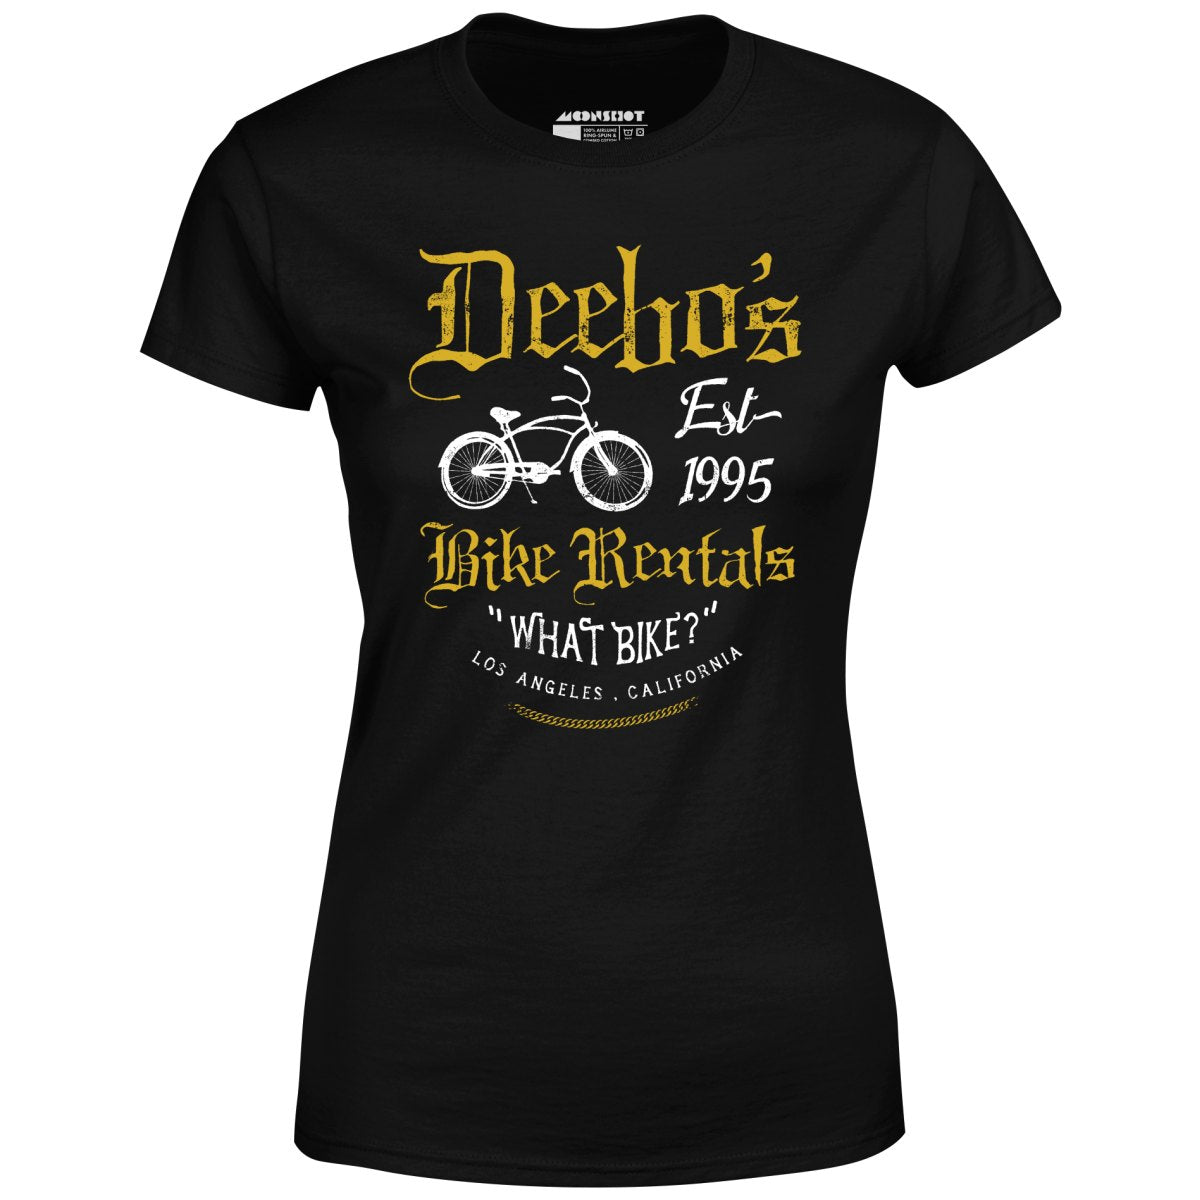 Deebo's Bike Rentals - Women's T-Shirt